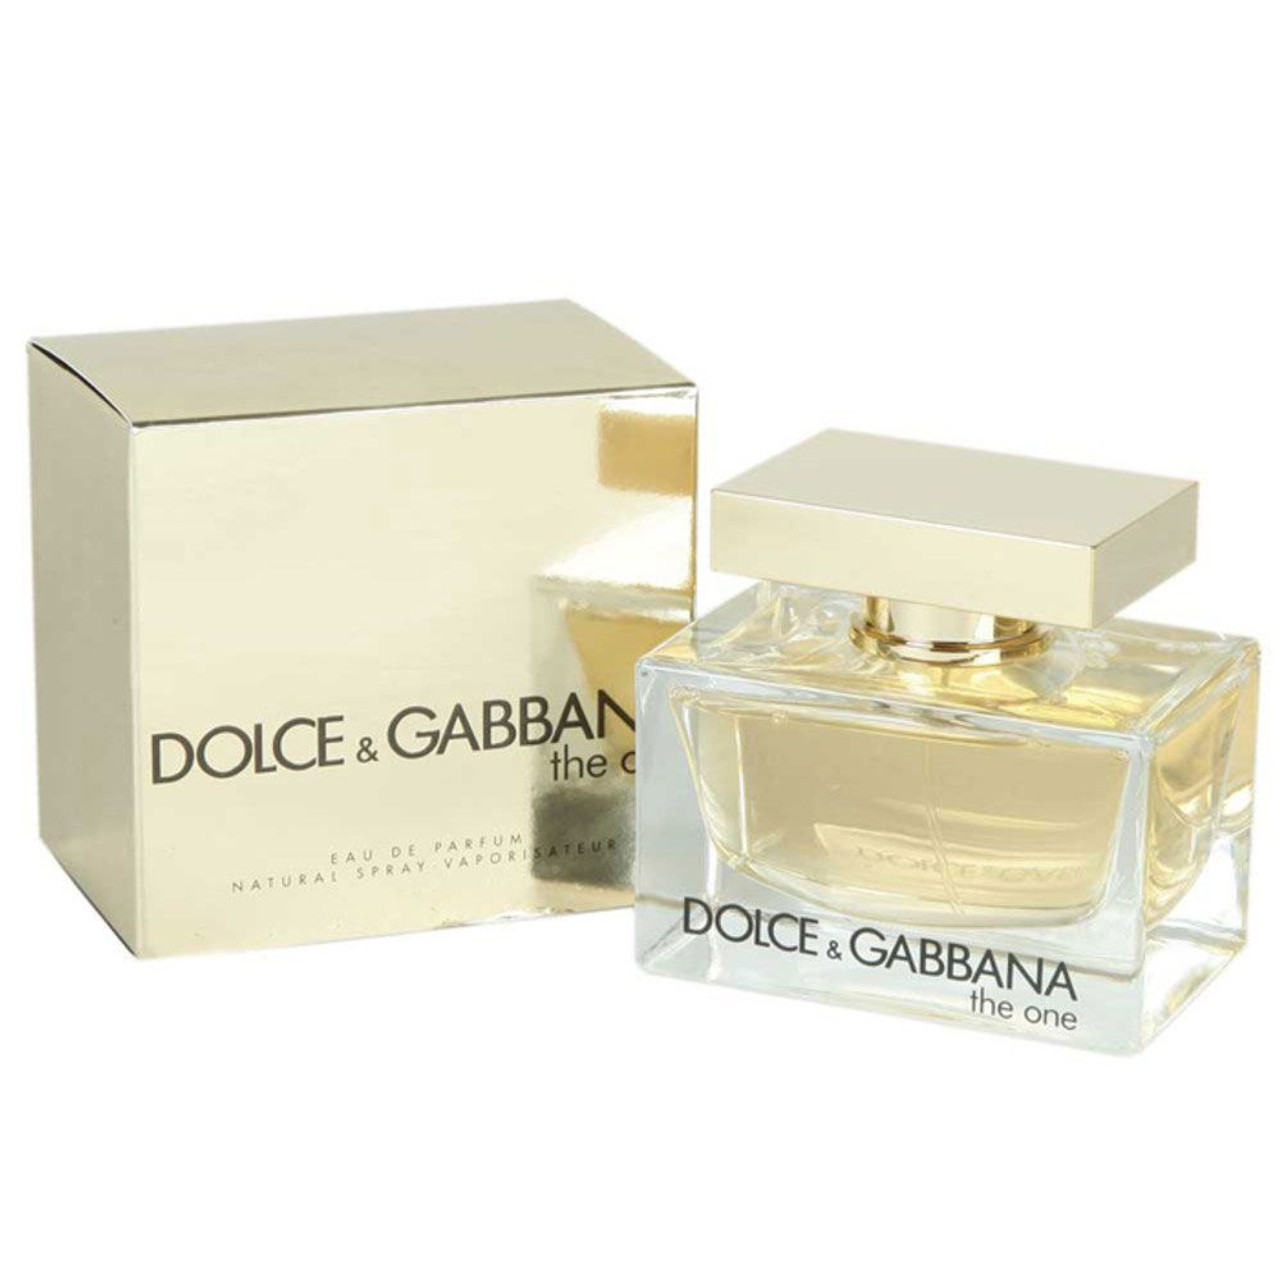 DOLCE & GABBANA - The One Eau de Parfum  oz. - Beauty Bridge